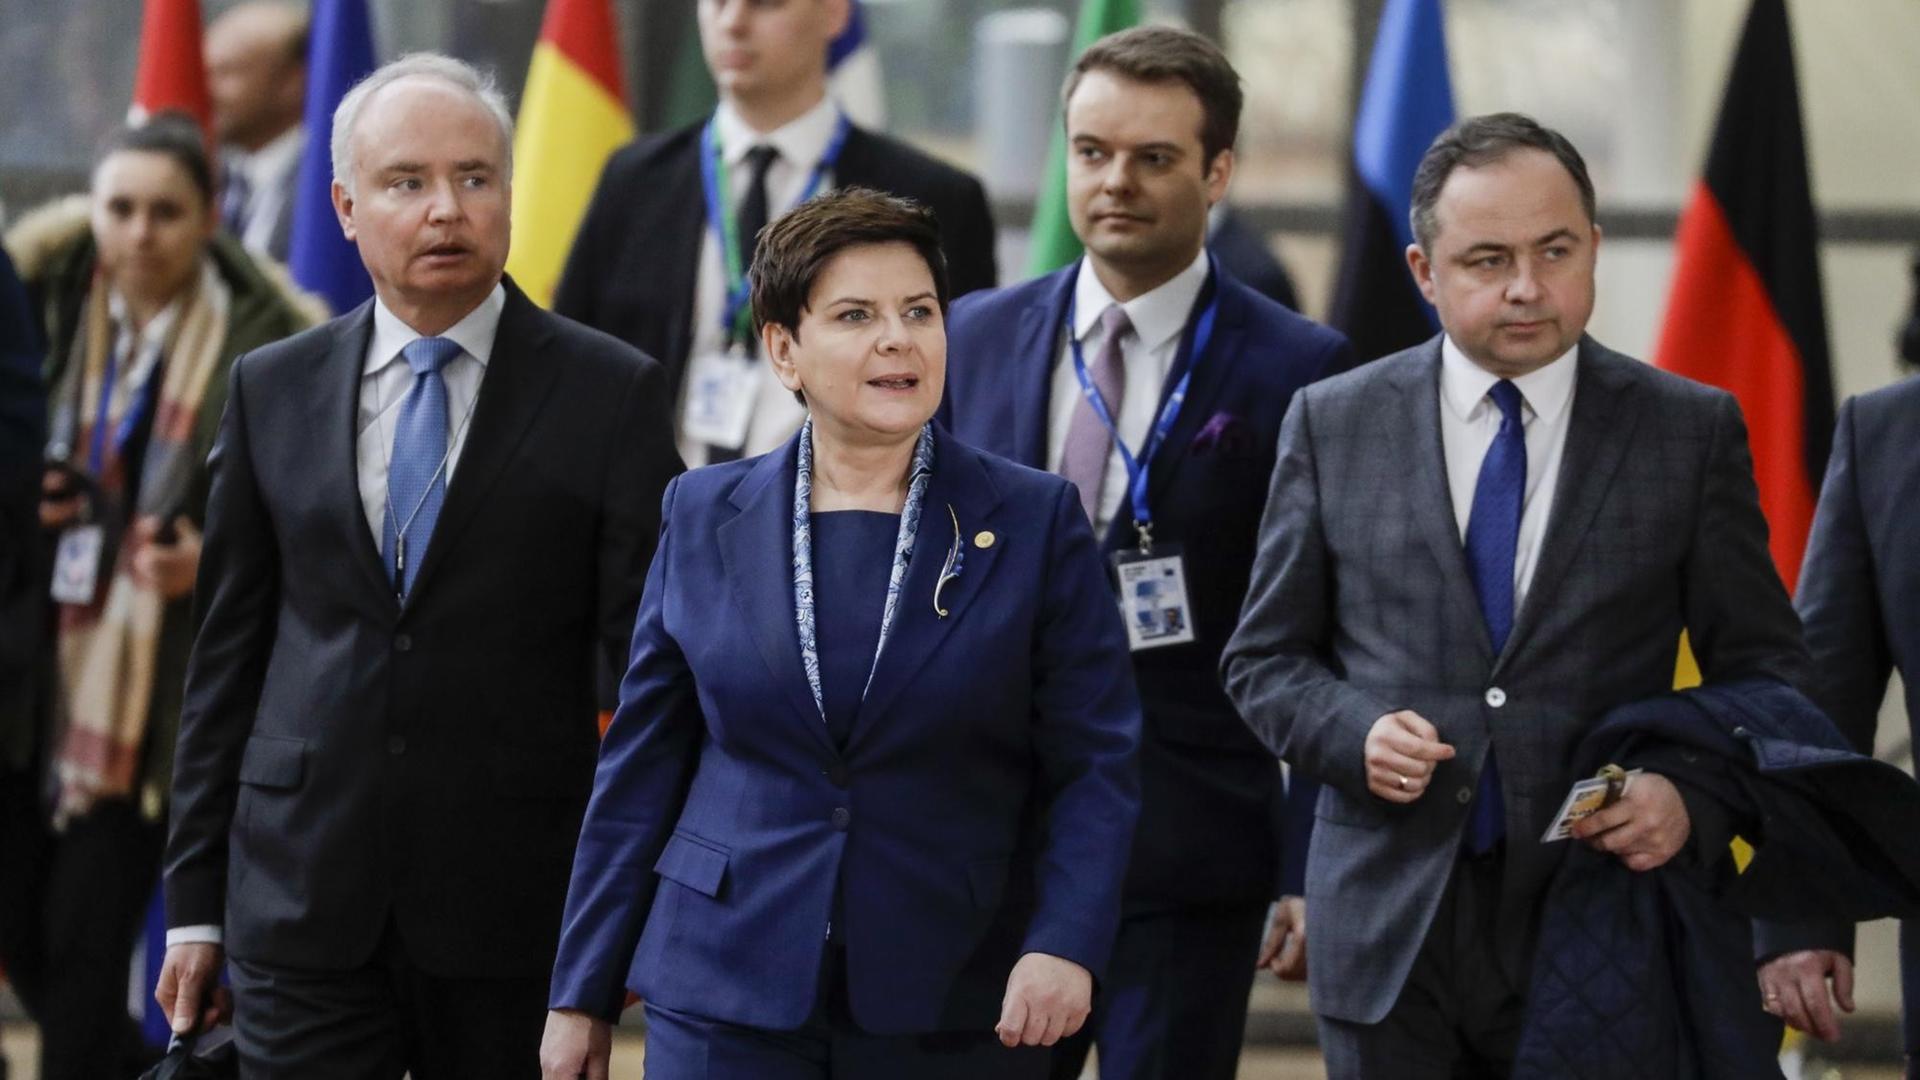 Sie sehen die polnische Ministerpräsidentin Beata Szydlo bei ihrer Ankunft auf dem EU-Gipfel.